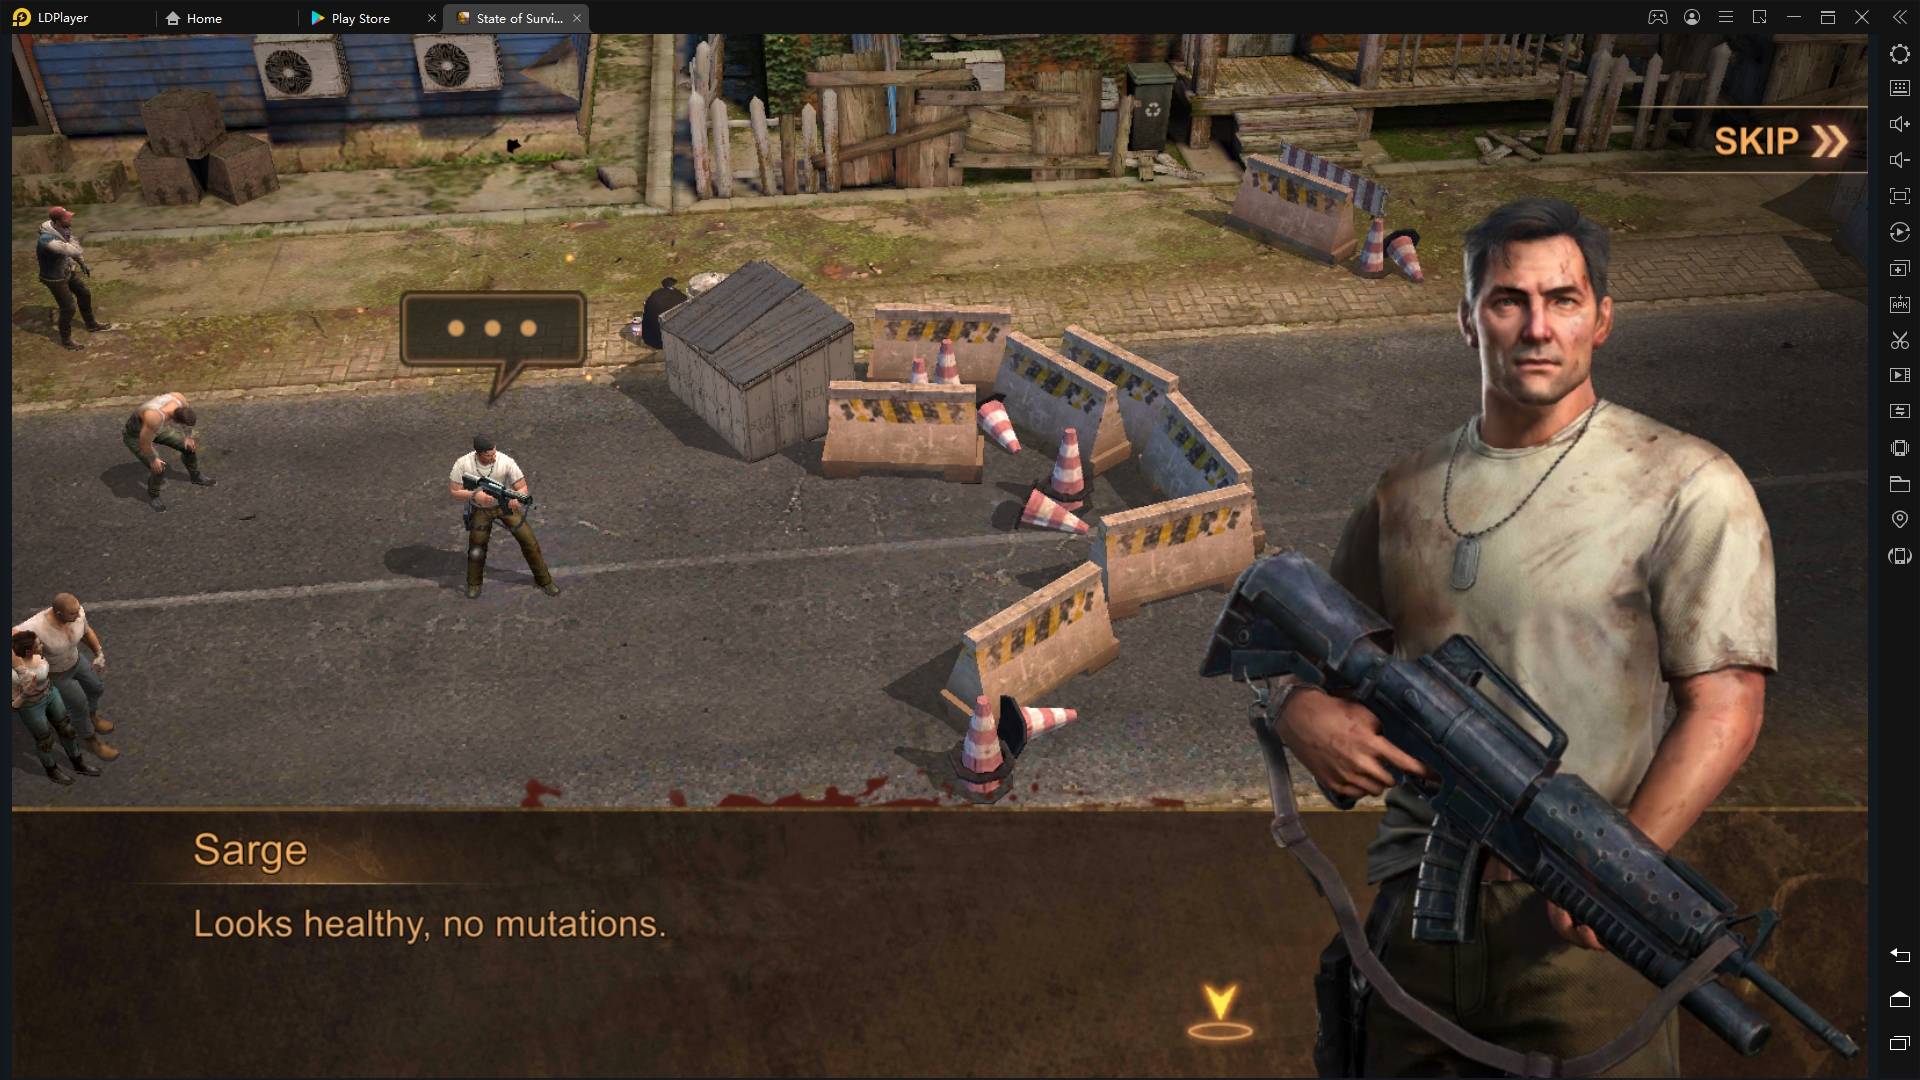 [Review] Mainkan State of Survival: Zombie War, Game Bertema Post-Apocalyptic di PC menggunakan Emulator LDPlayer